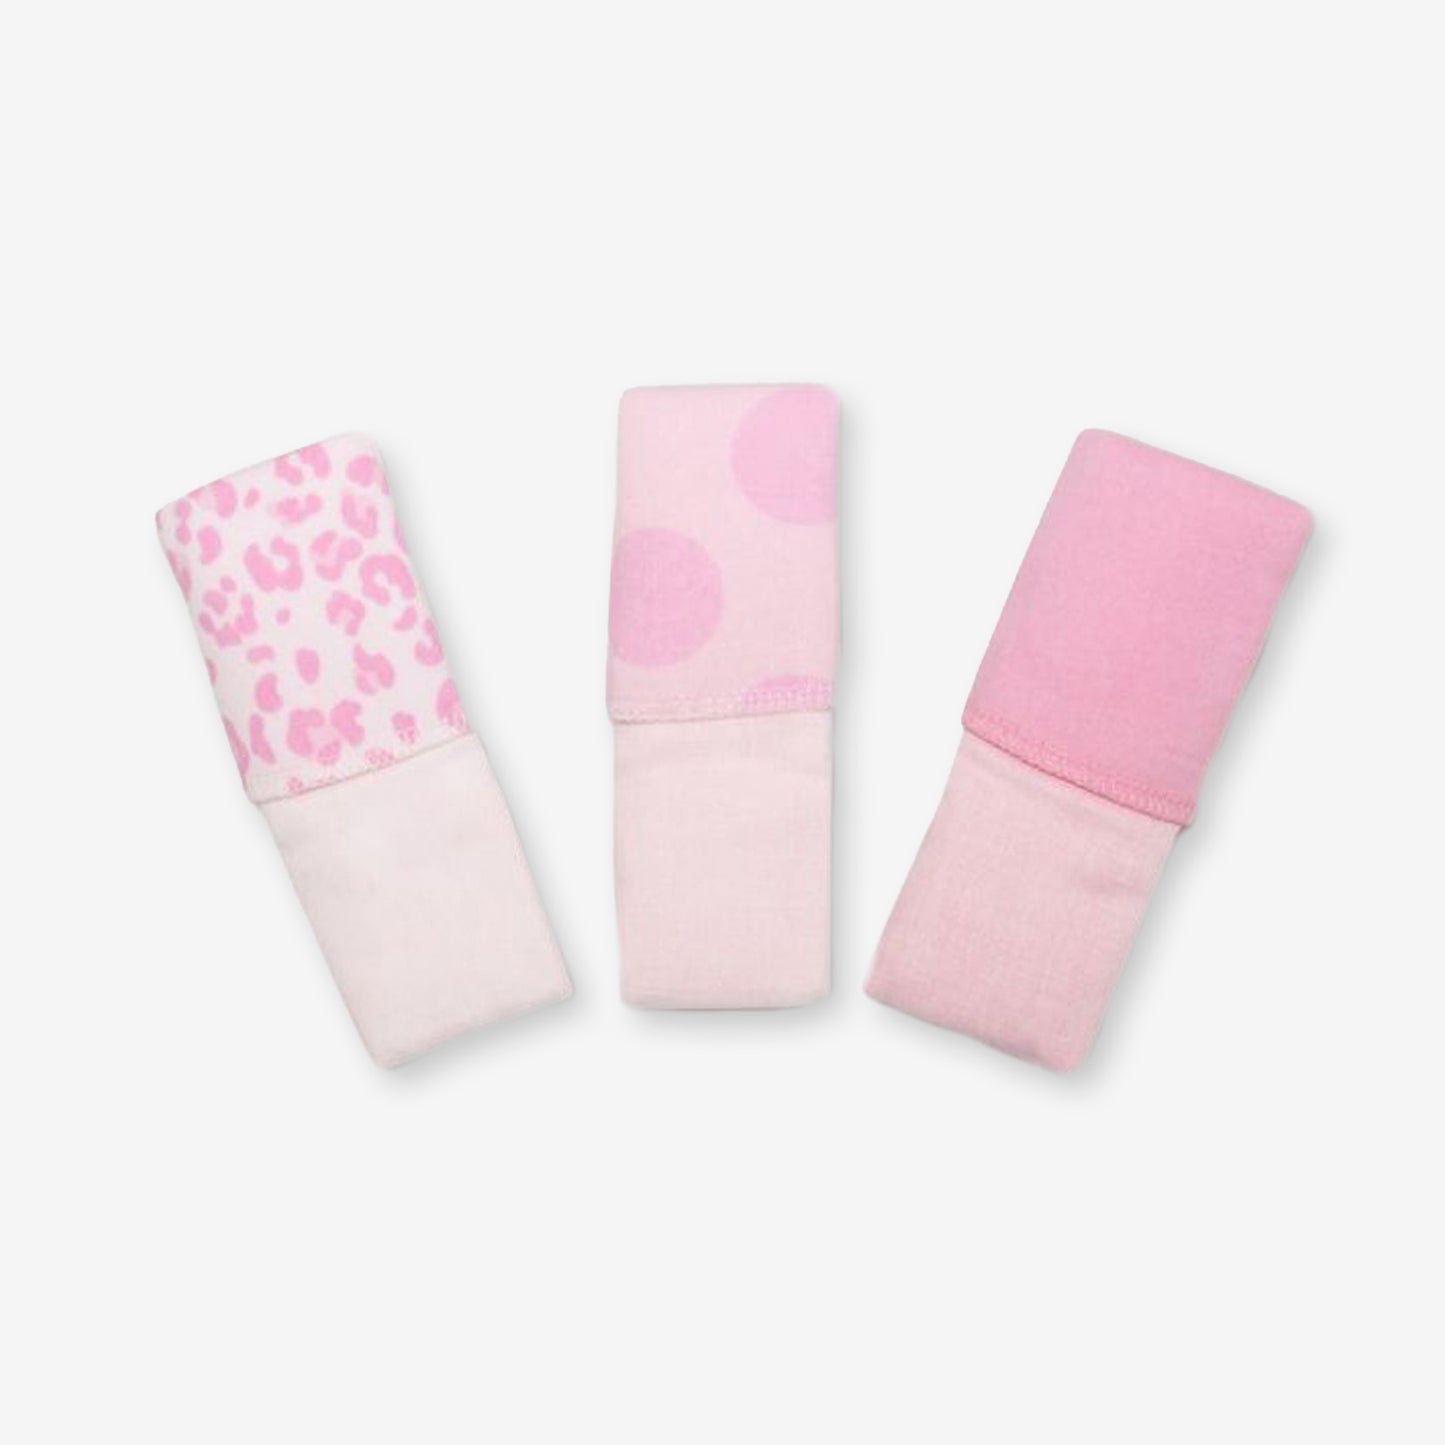 針織汗巾3件裝-粉紅色+波點+豹紋印花